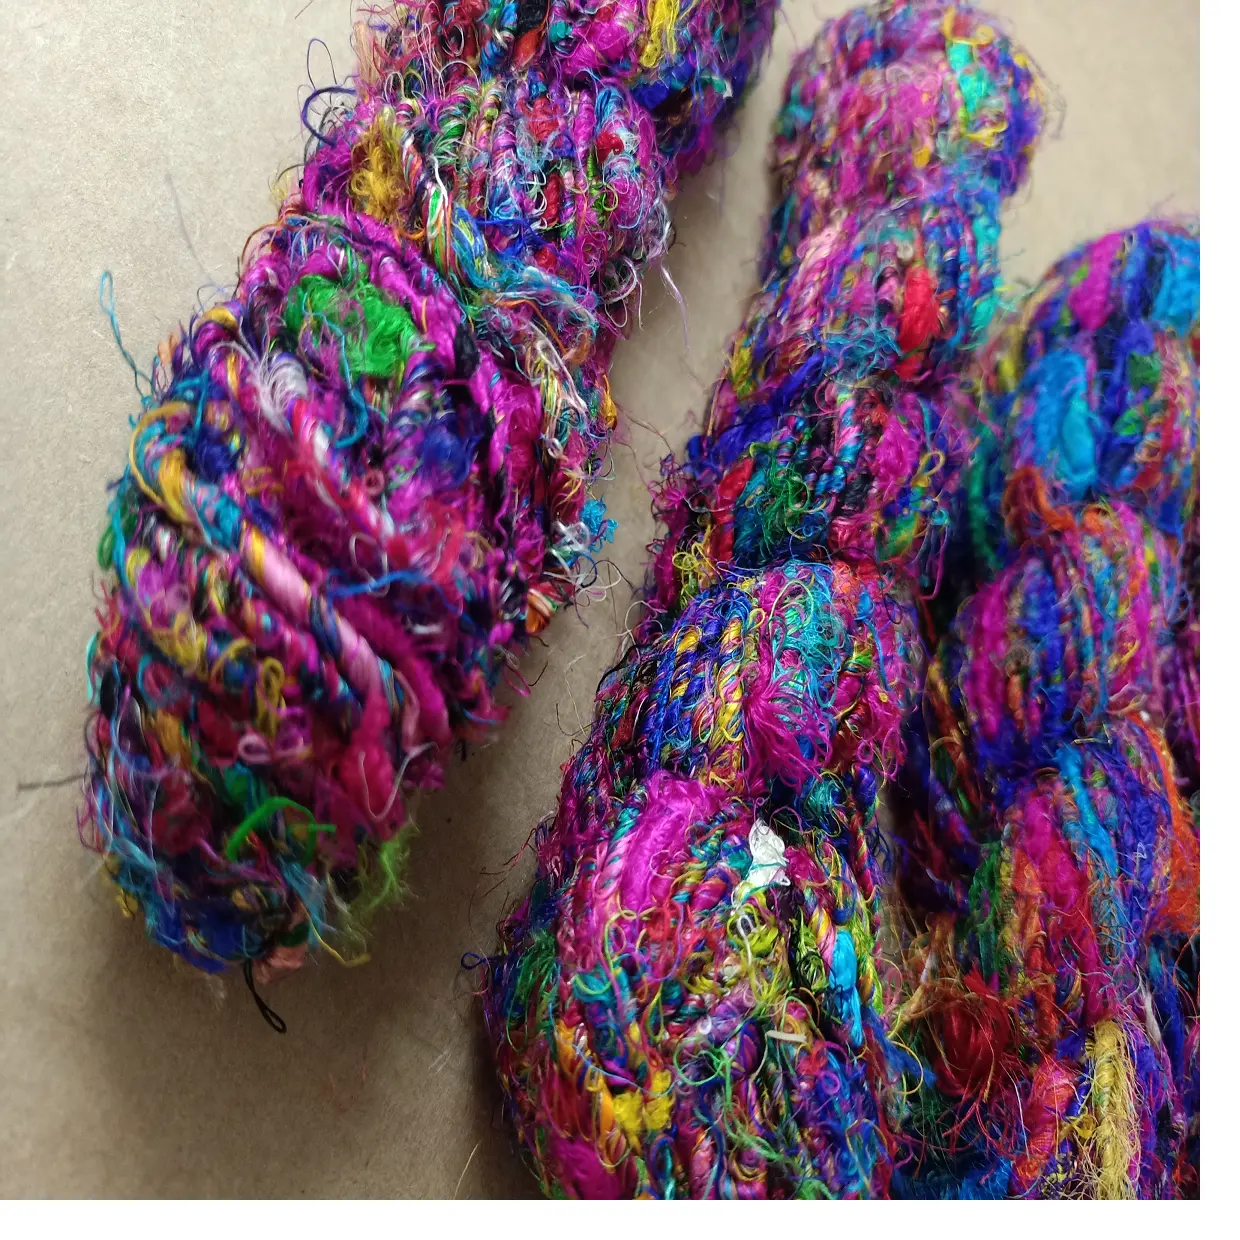 リサイクルされたサリシルクから作られた再販用の糸と繊維の店に最適な、さまざまな色のカスタムメイドのサリシルク糸